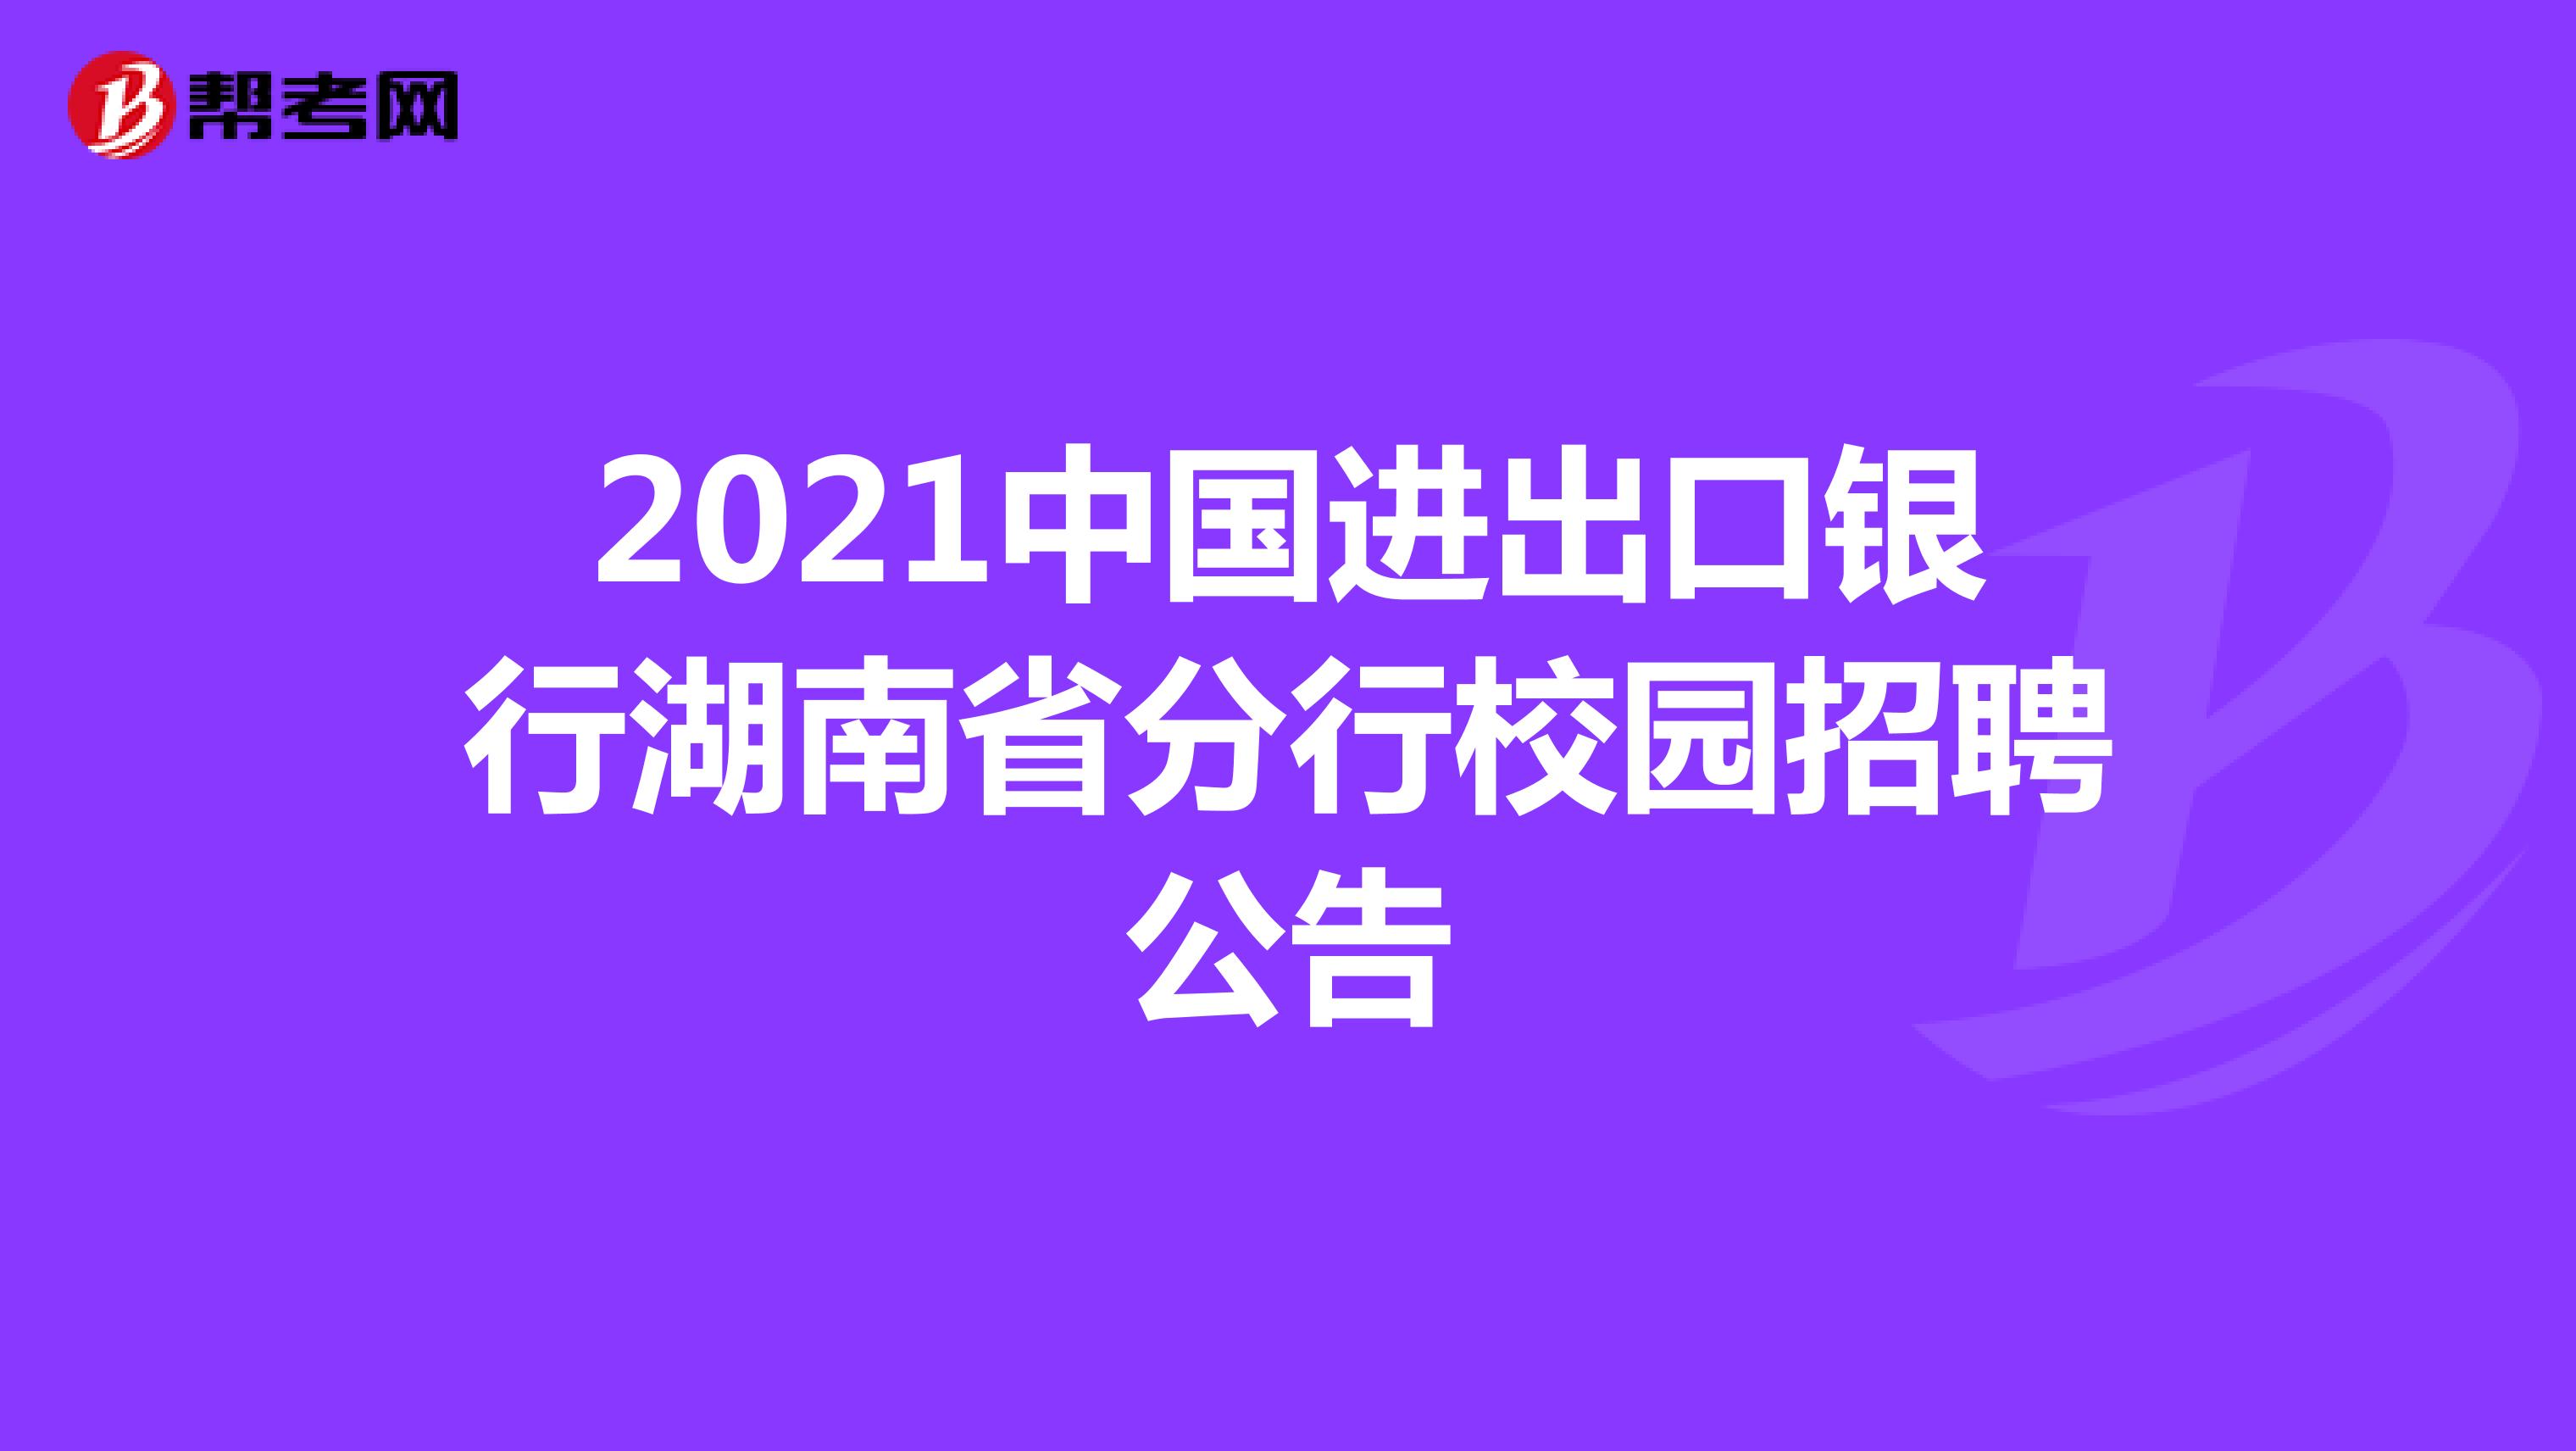 2021中国进出口银行湖南省分行校园招聘公告